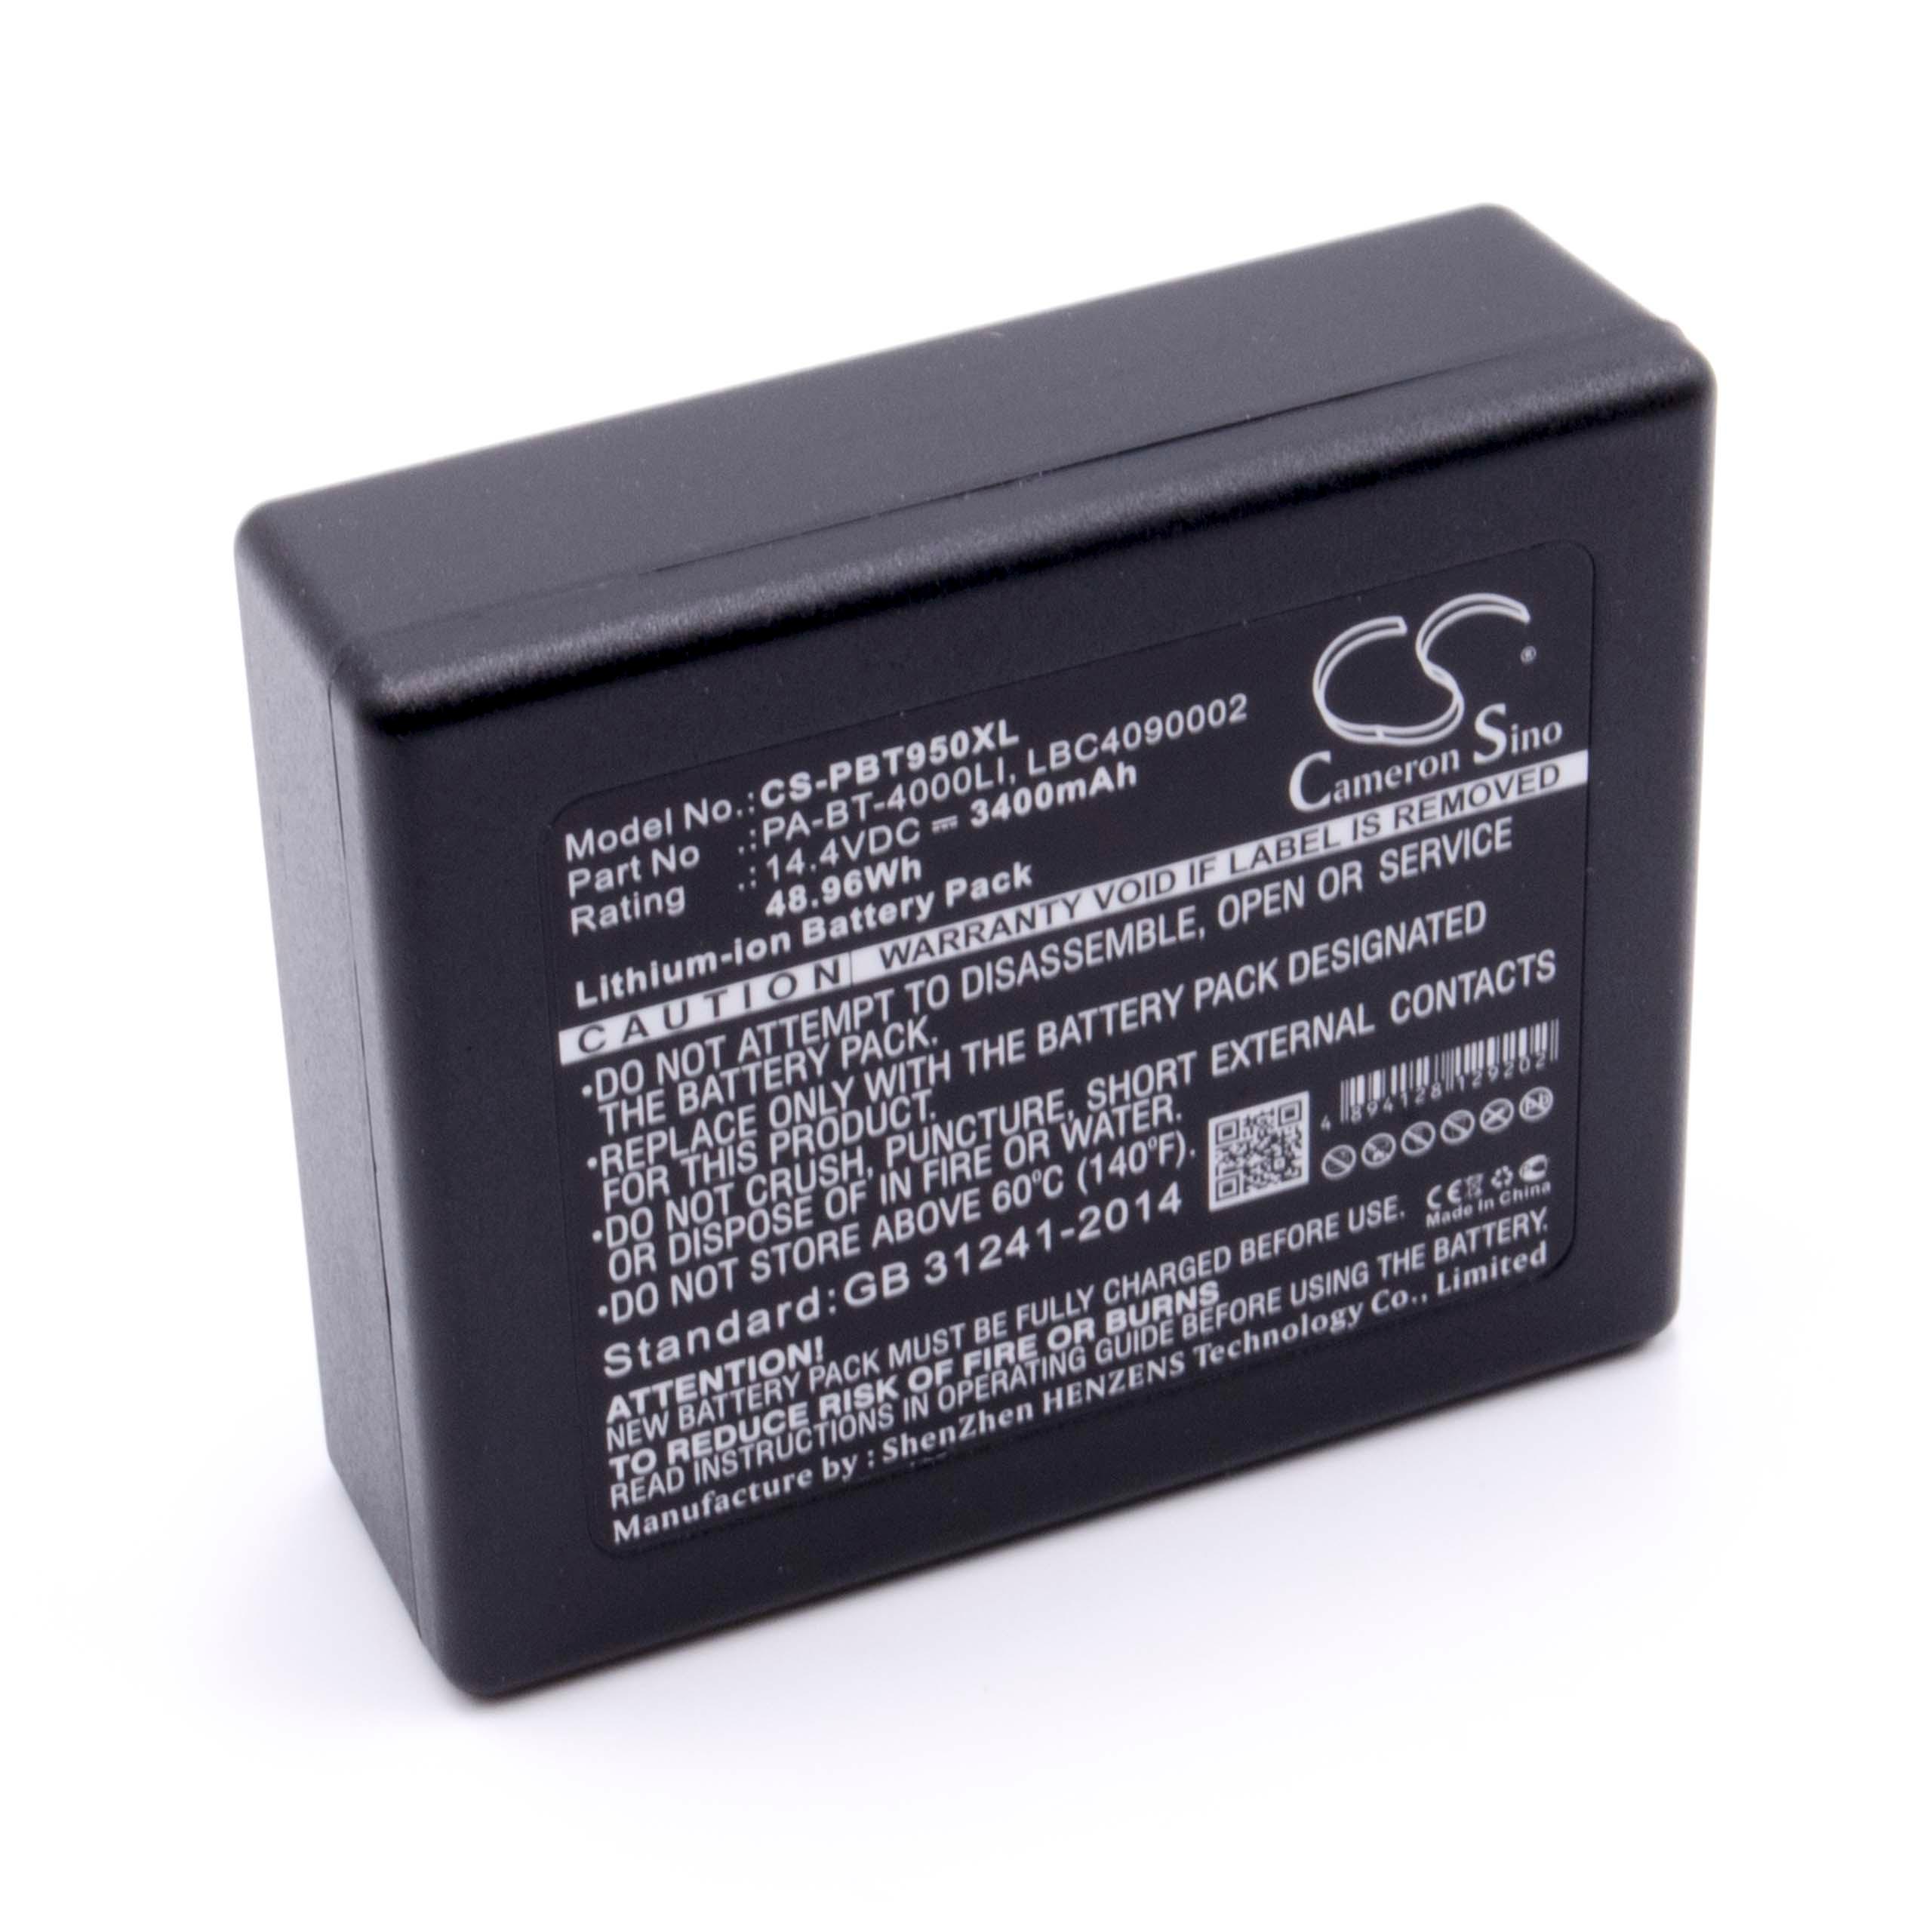 Batterie remplace Brother LBD709-001, HP25B, LBF3250001, LBC4090002 pour imprimante - 3400mAh 14,4V Li-ion